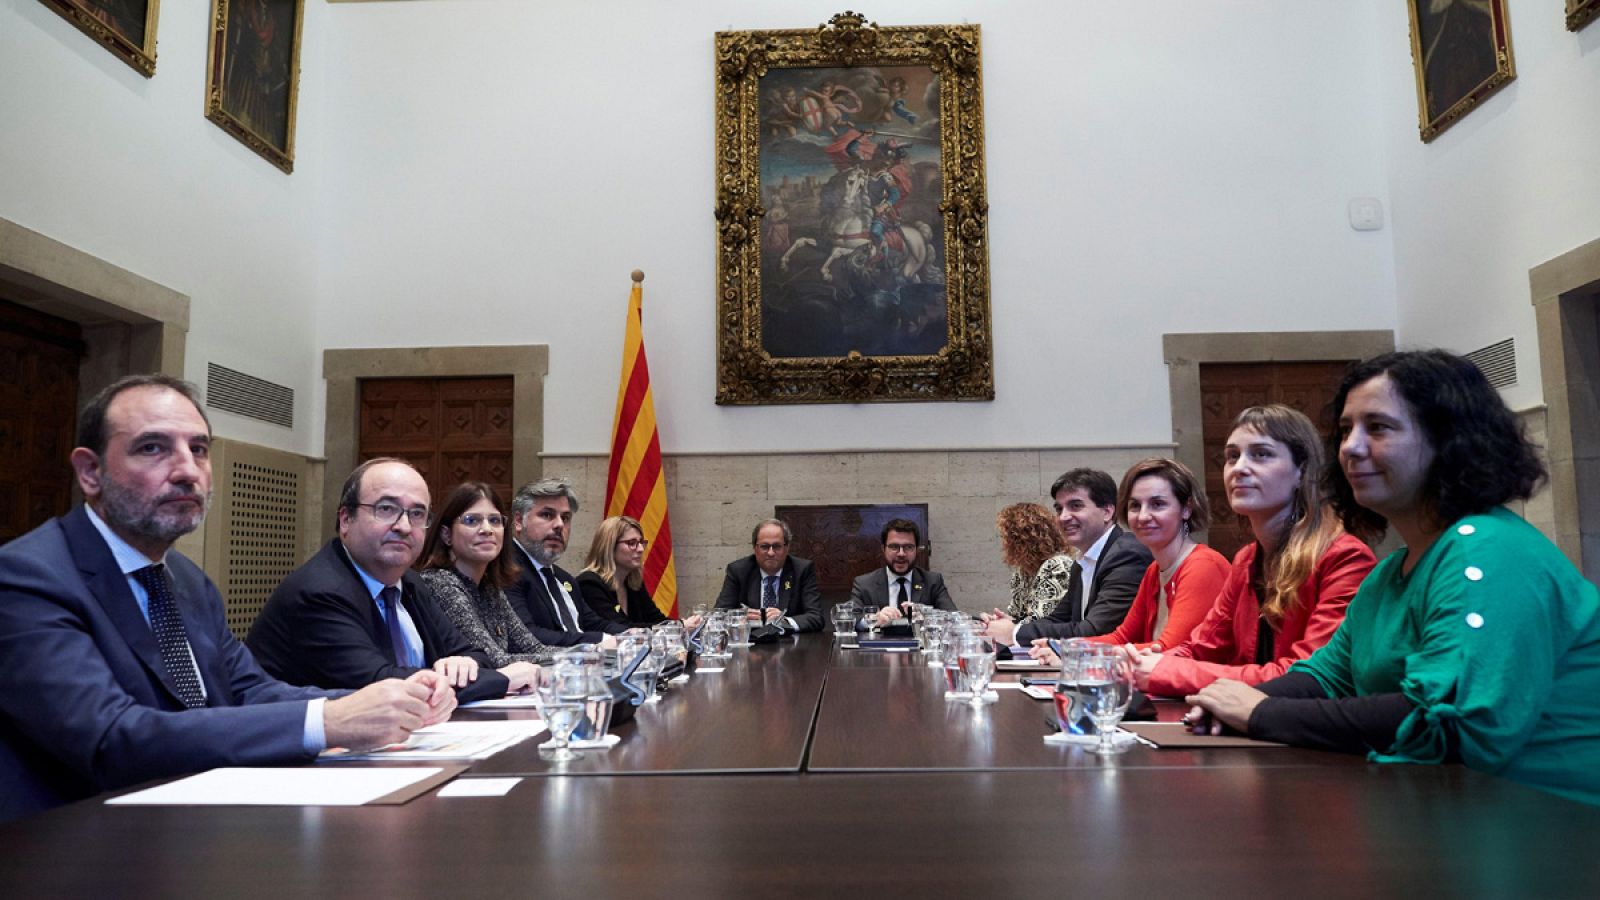 El presidente de la Generalitat, Quim Torra y el vicepresidente Pere Aragonés, presiden la reunión convocada con los grupos parlamentarios catalanes para un Espacio de Diálogo